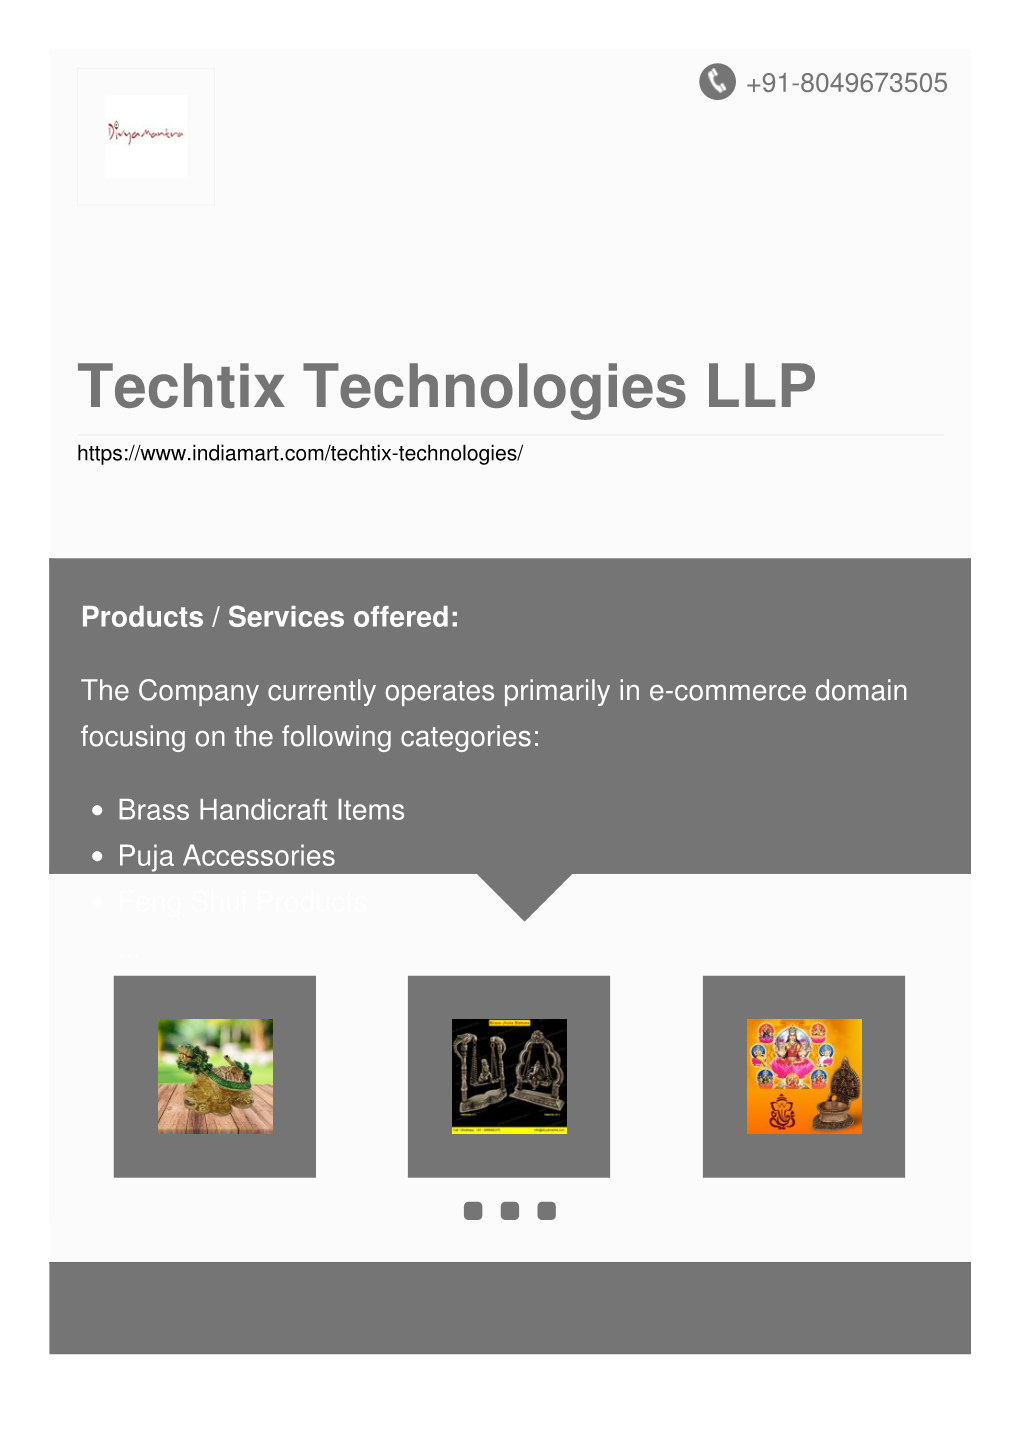 Techtix Technologies LLP